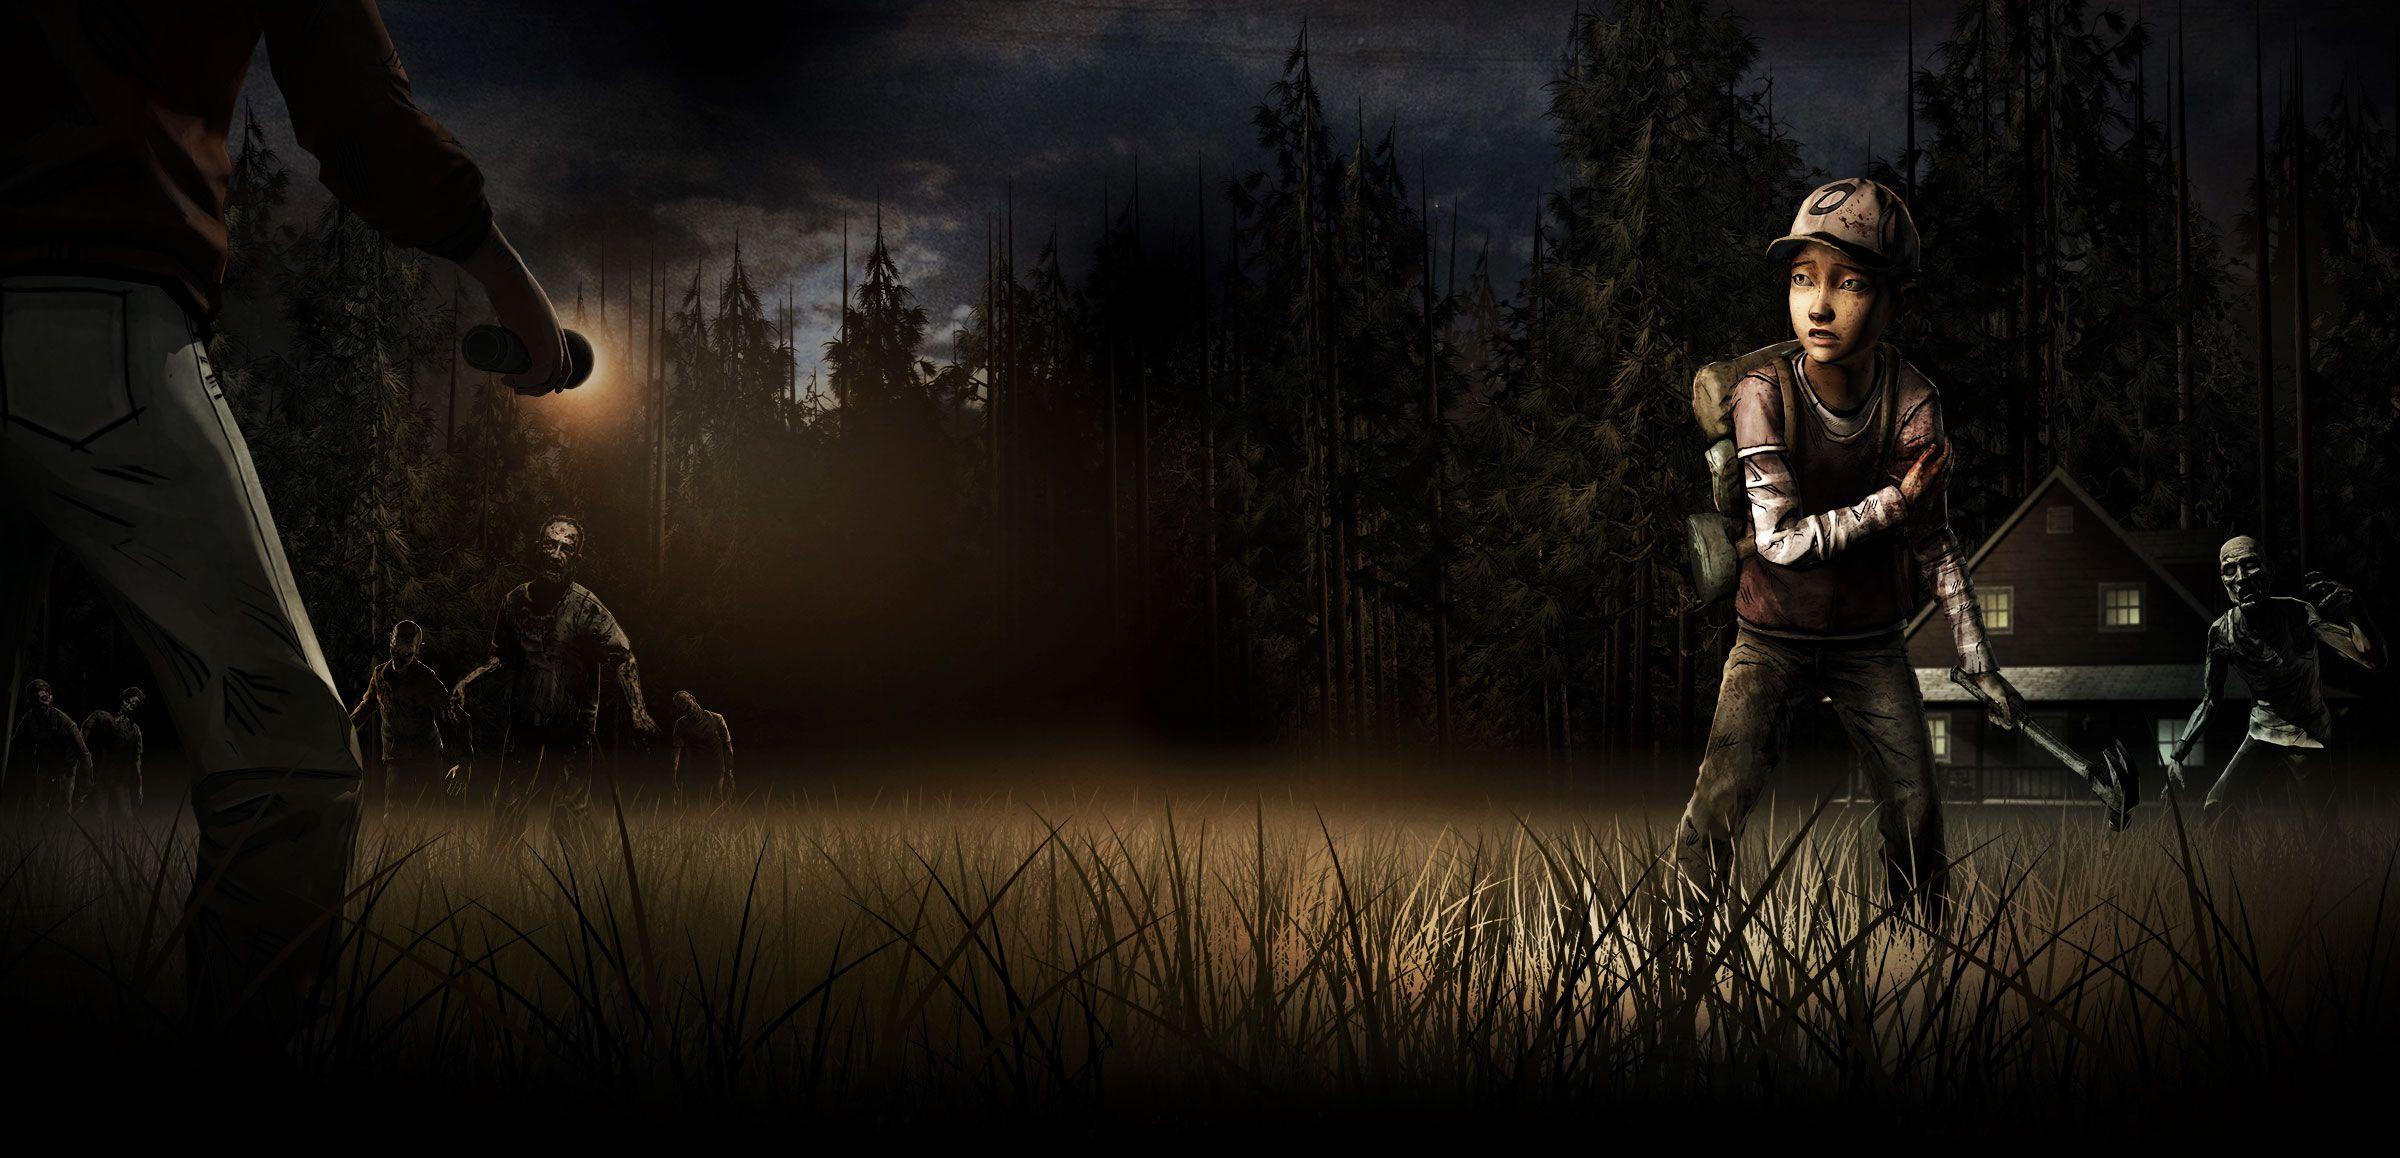 The walking dead video game wallpaper. The Walking Dead